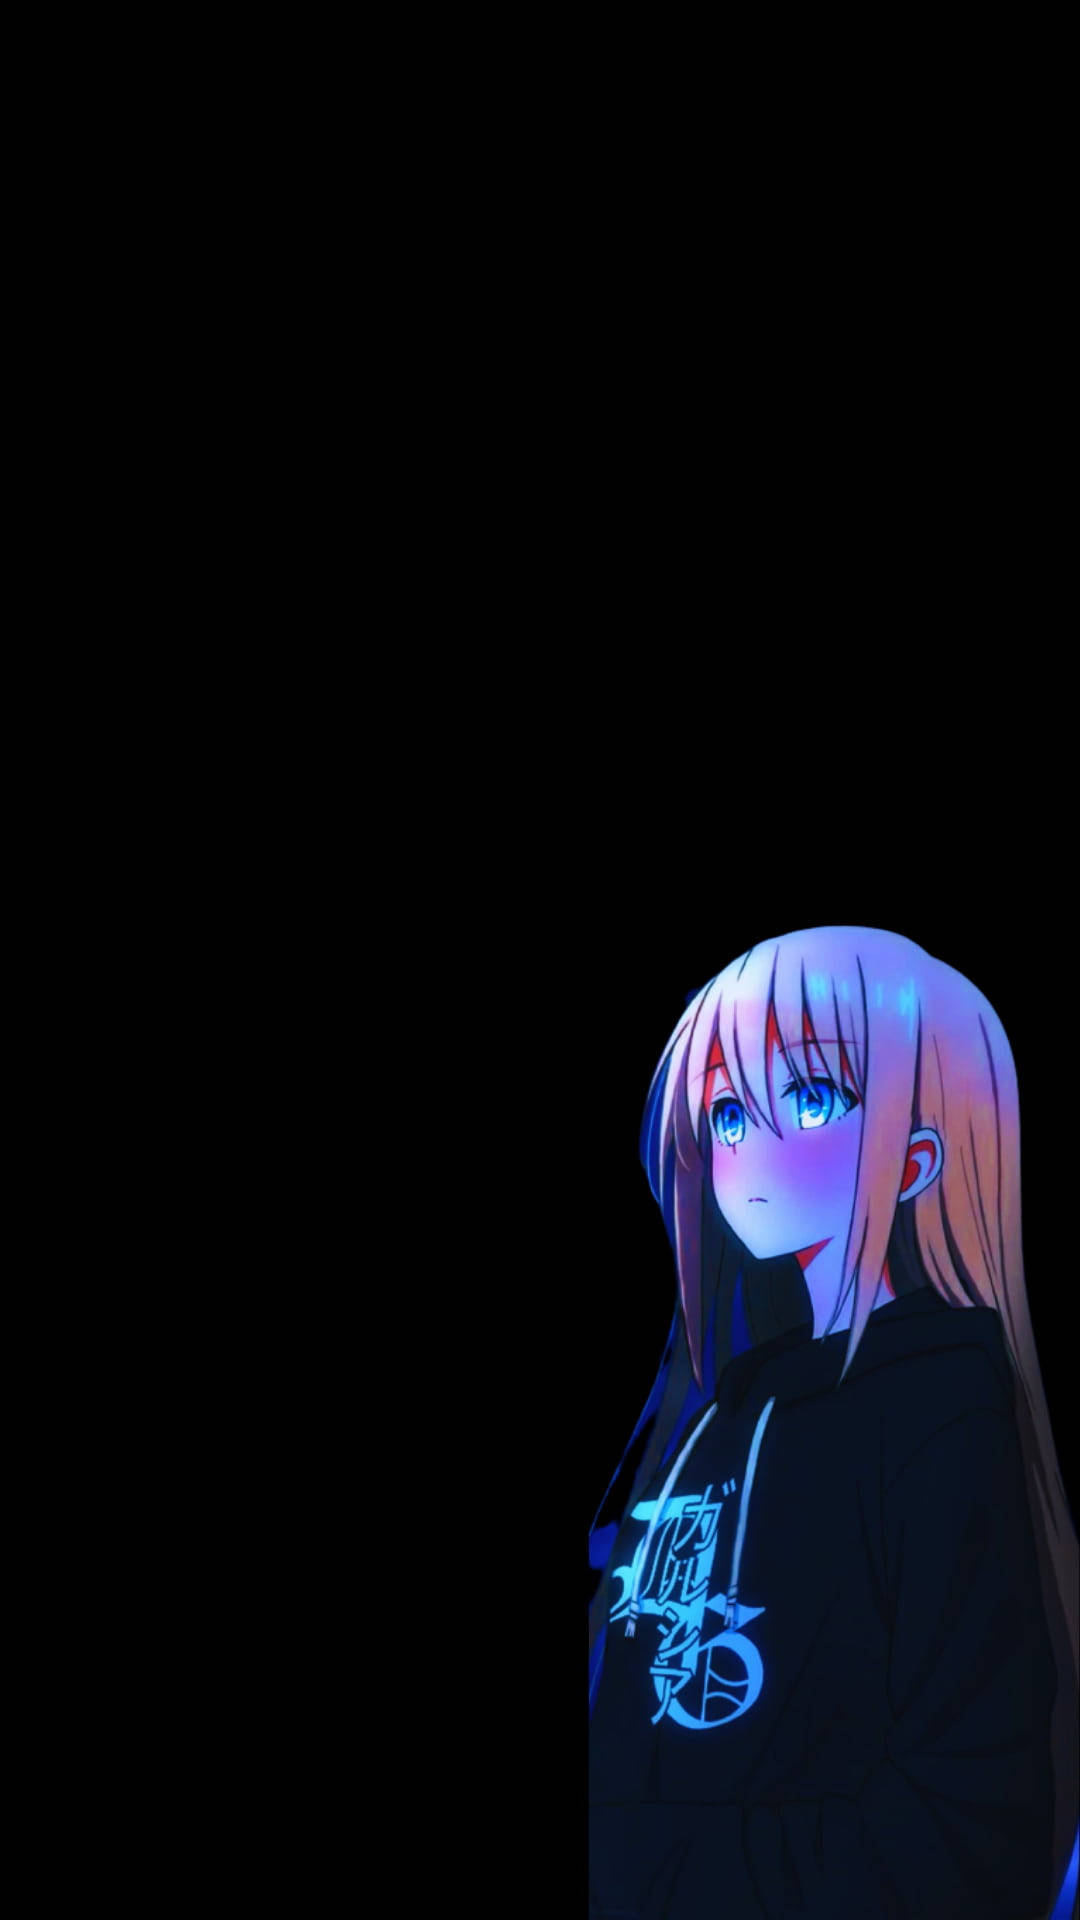 Dark Aesthetic Sad Anime Girl Background